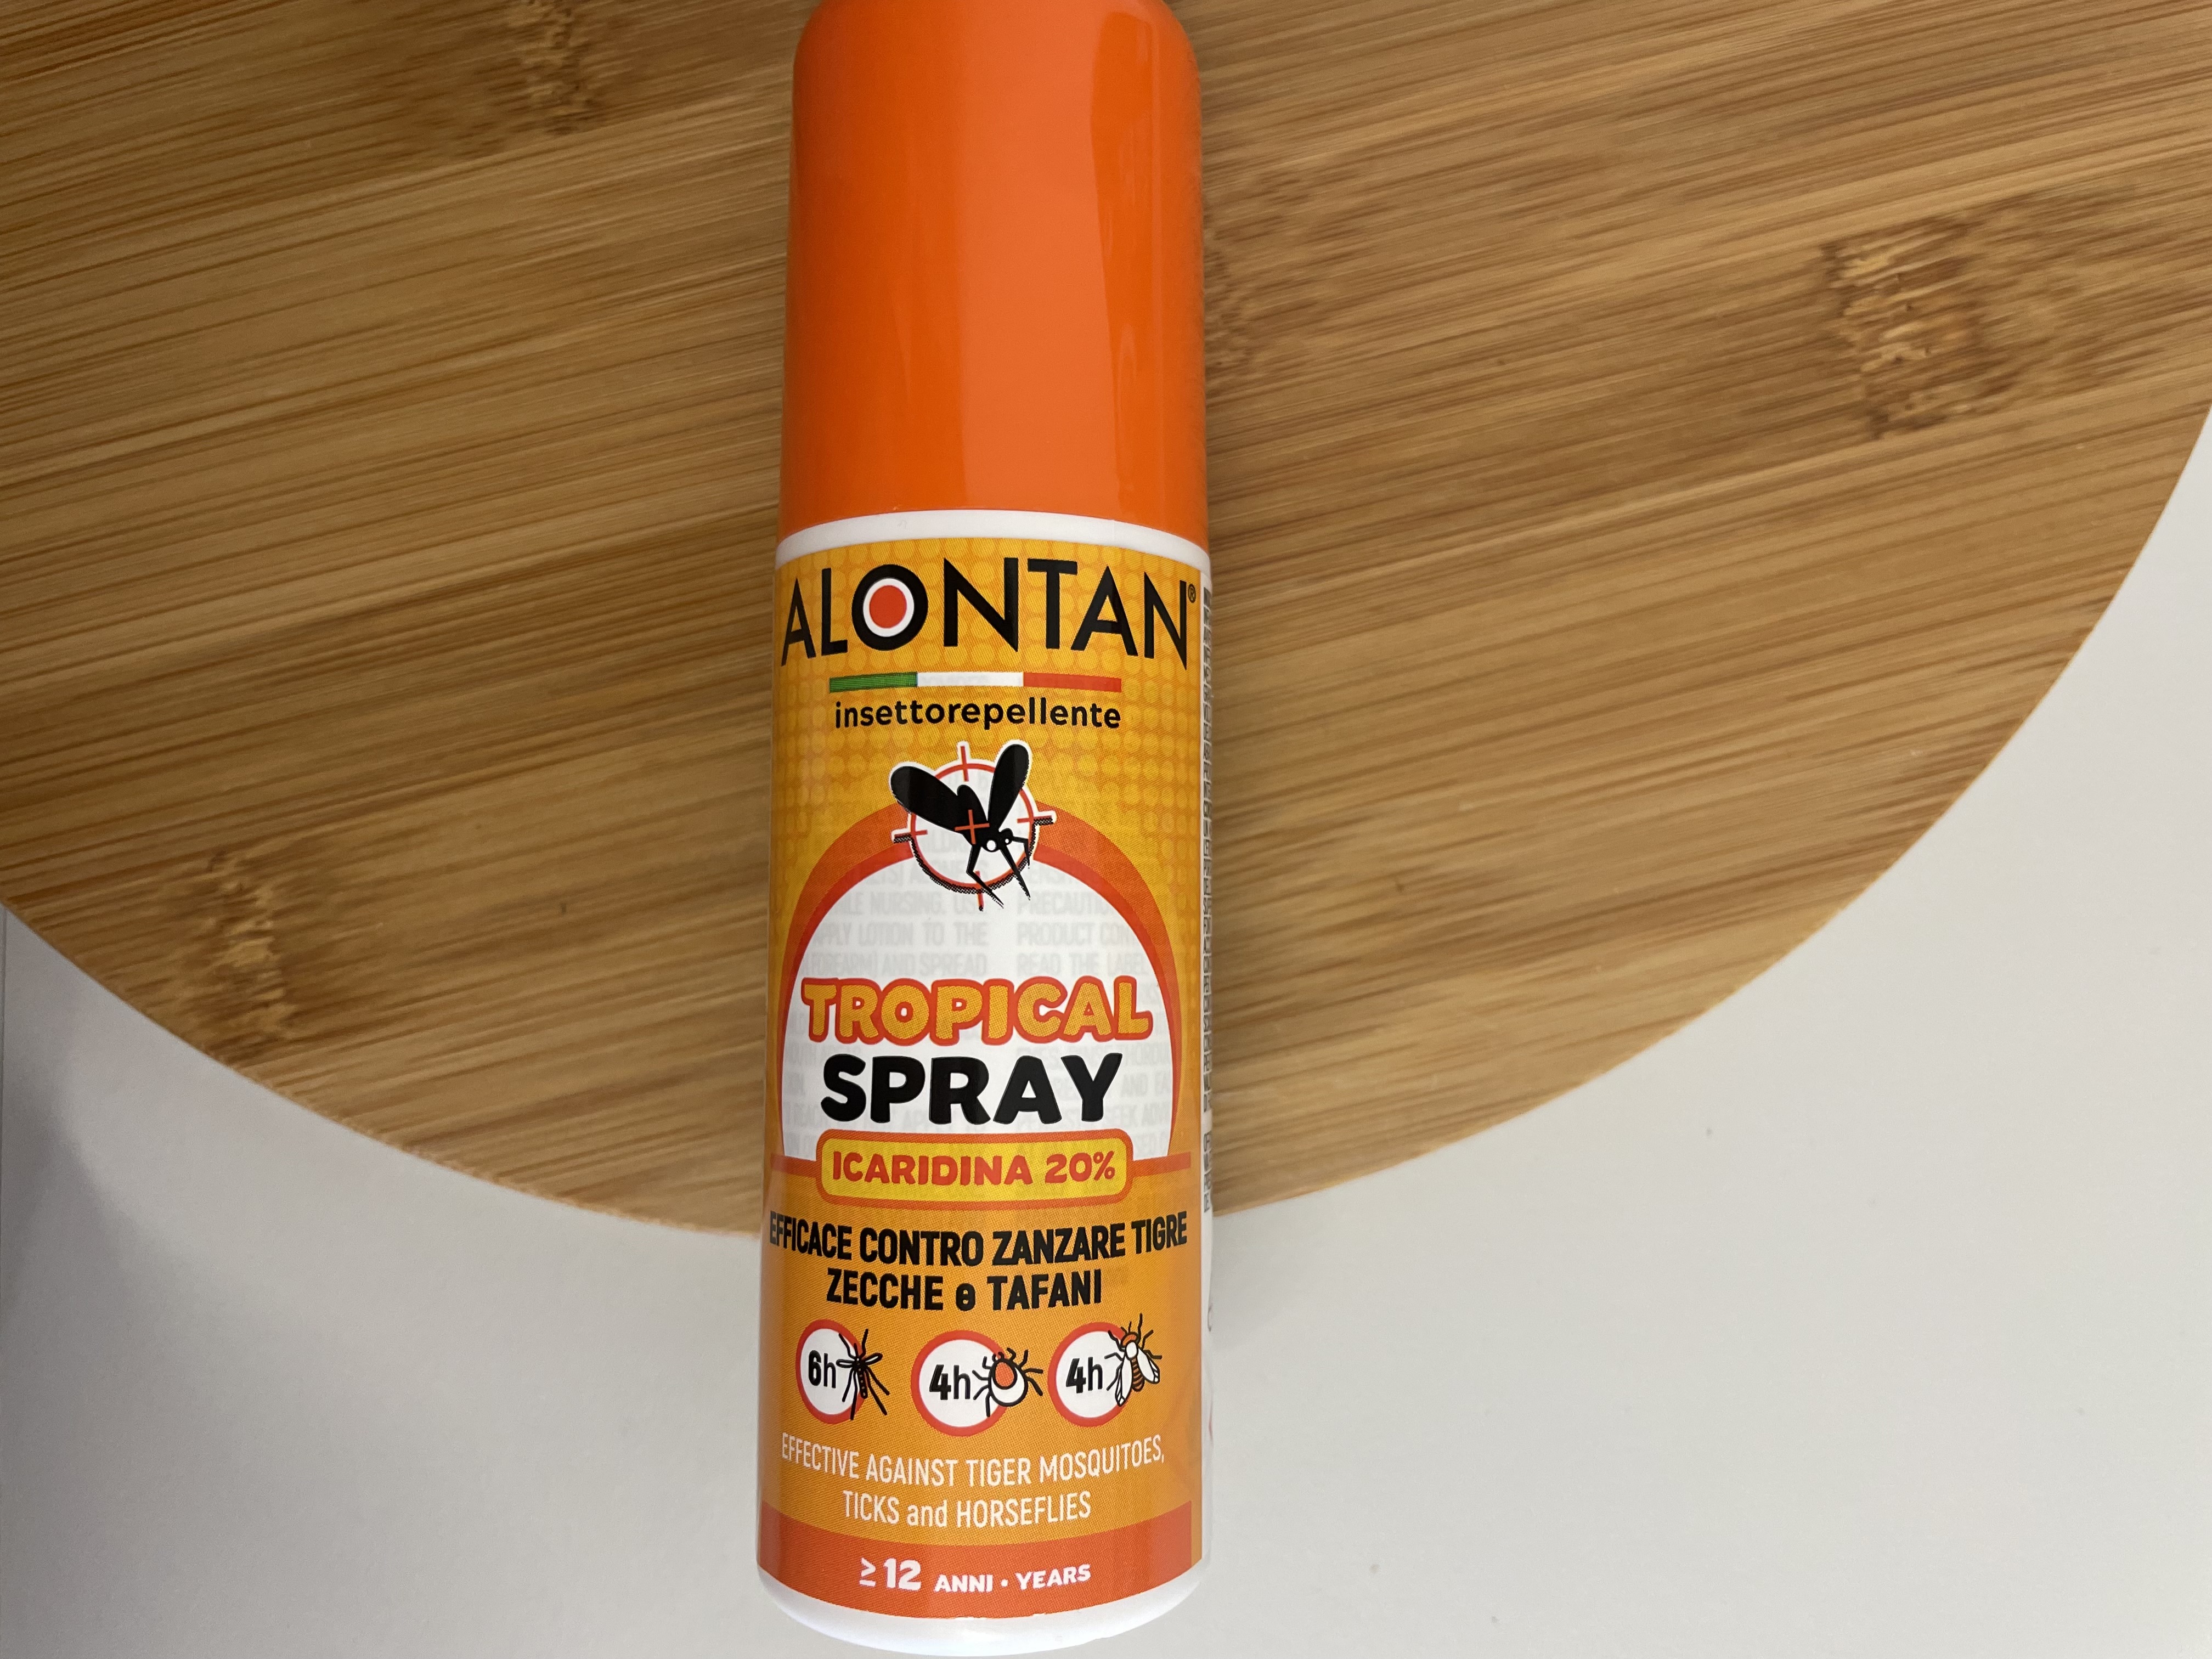 Alontan: Tropical Spray